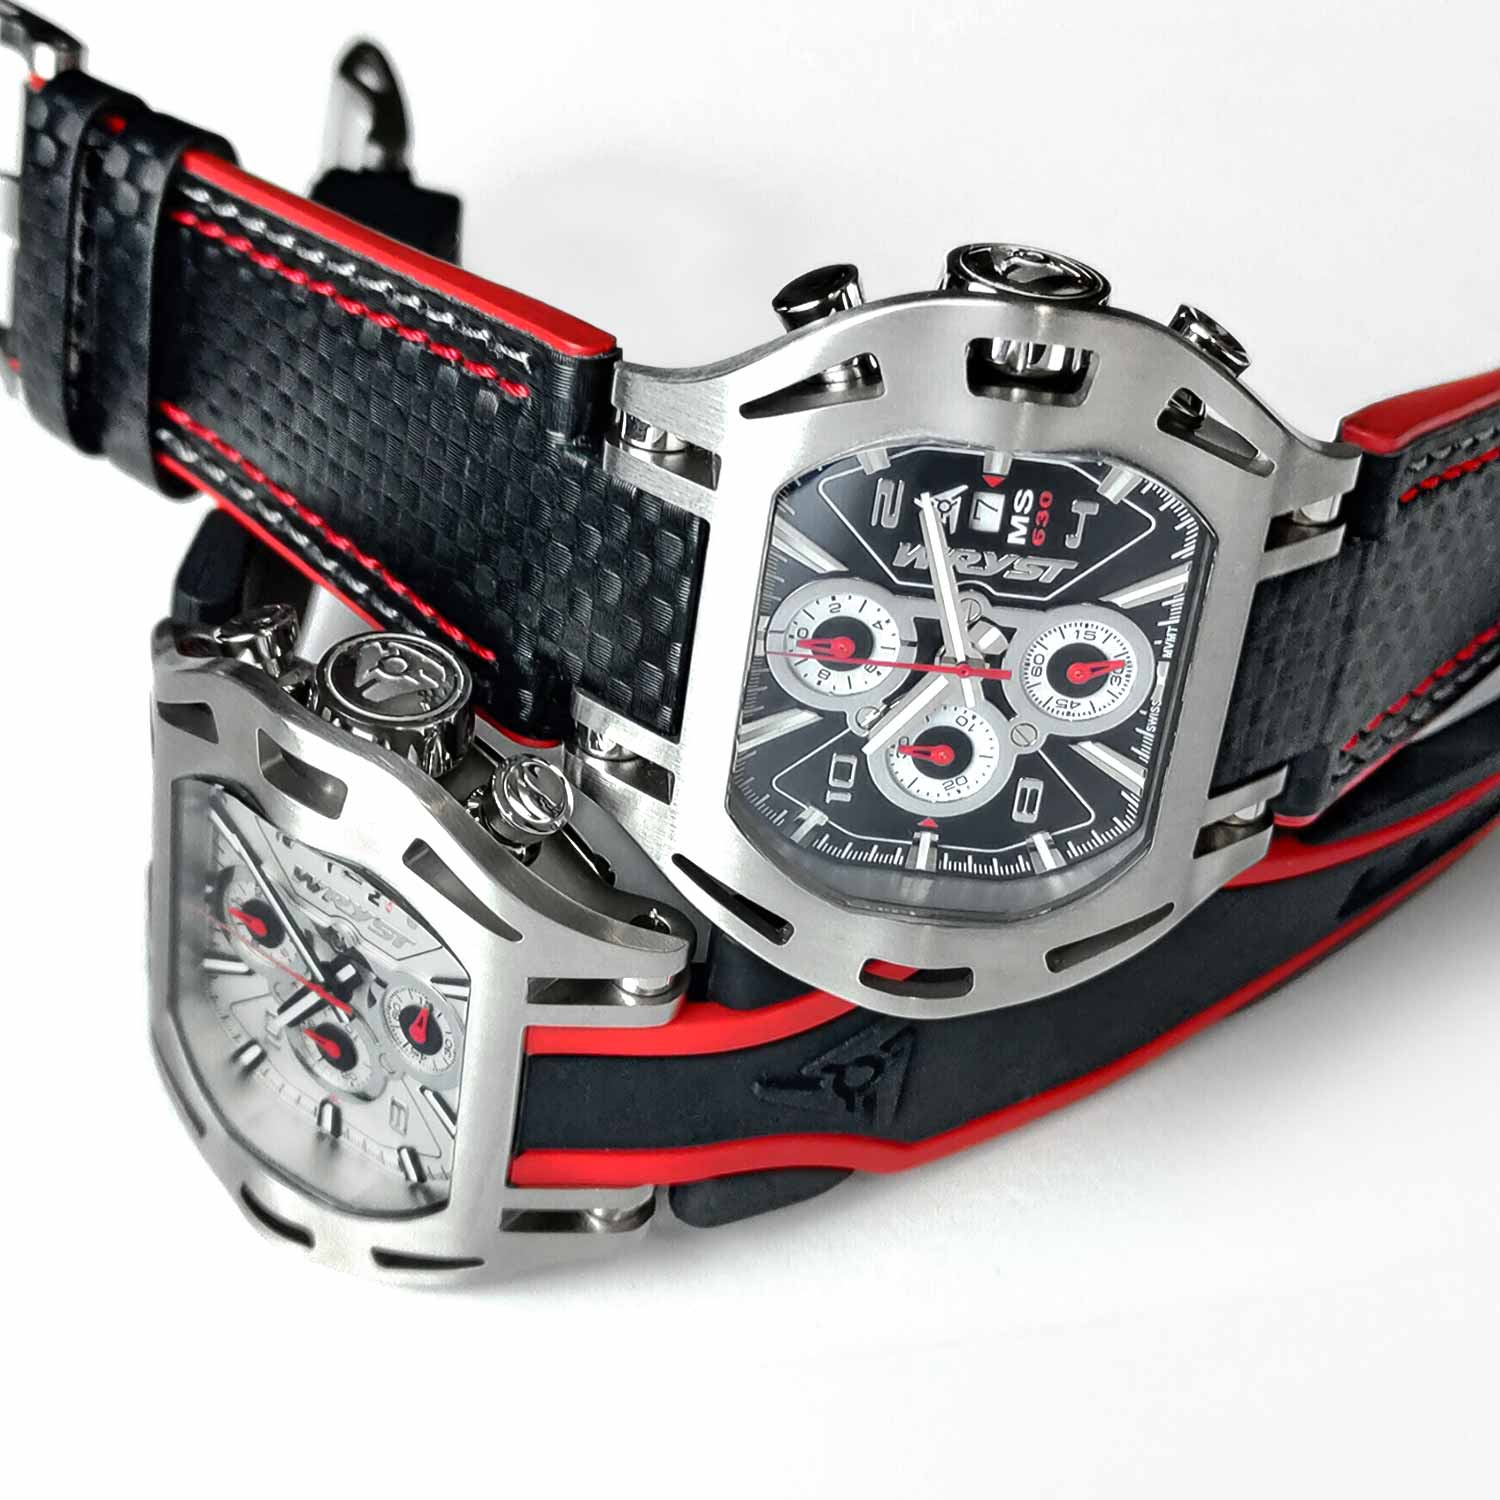 La nouvelle série de montres Wryst Motors pour la course